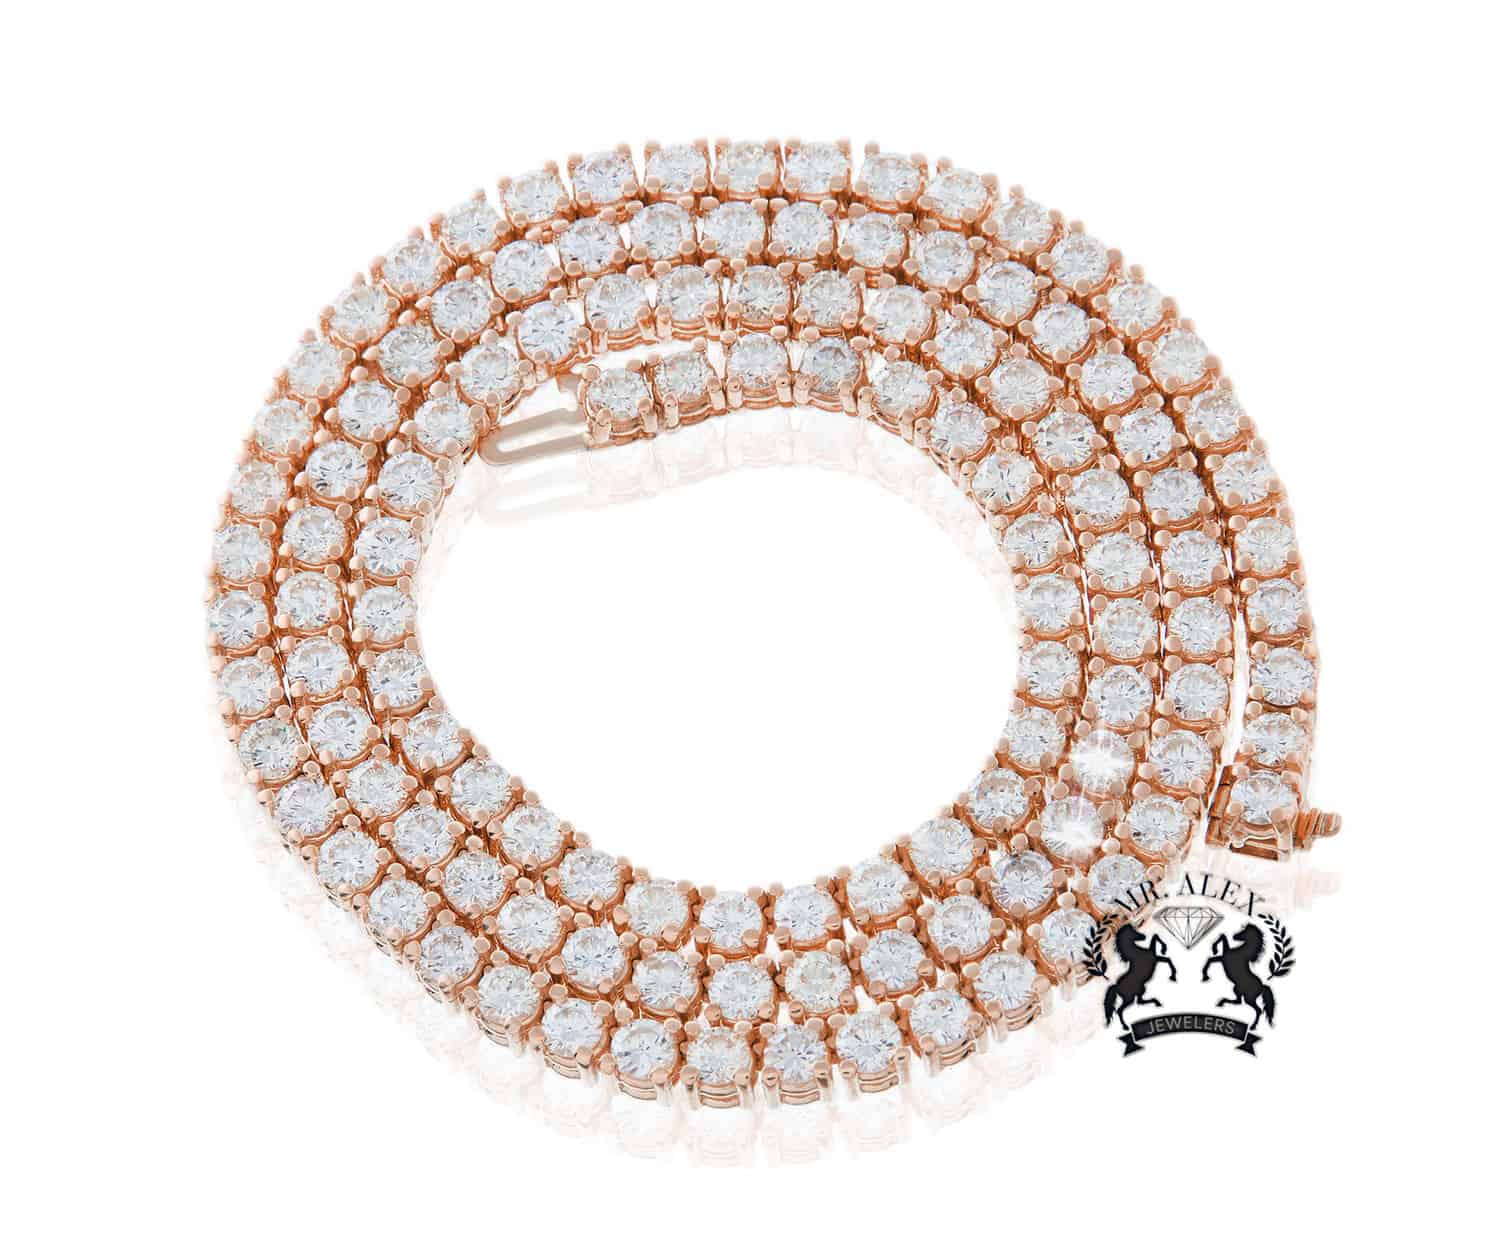 14k Luxury Diamond Tennis Chain - Mr. Alex Jewelry